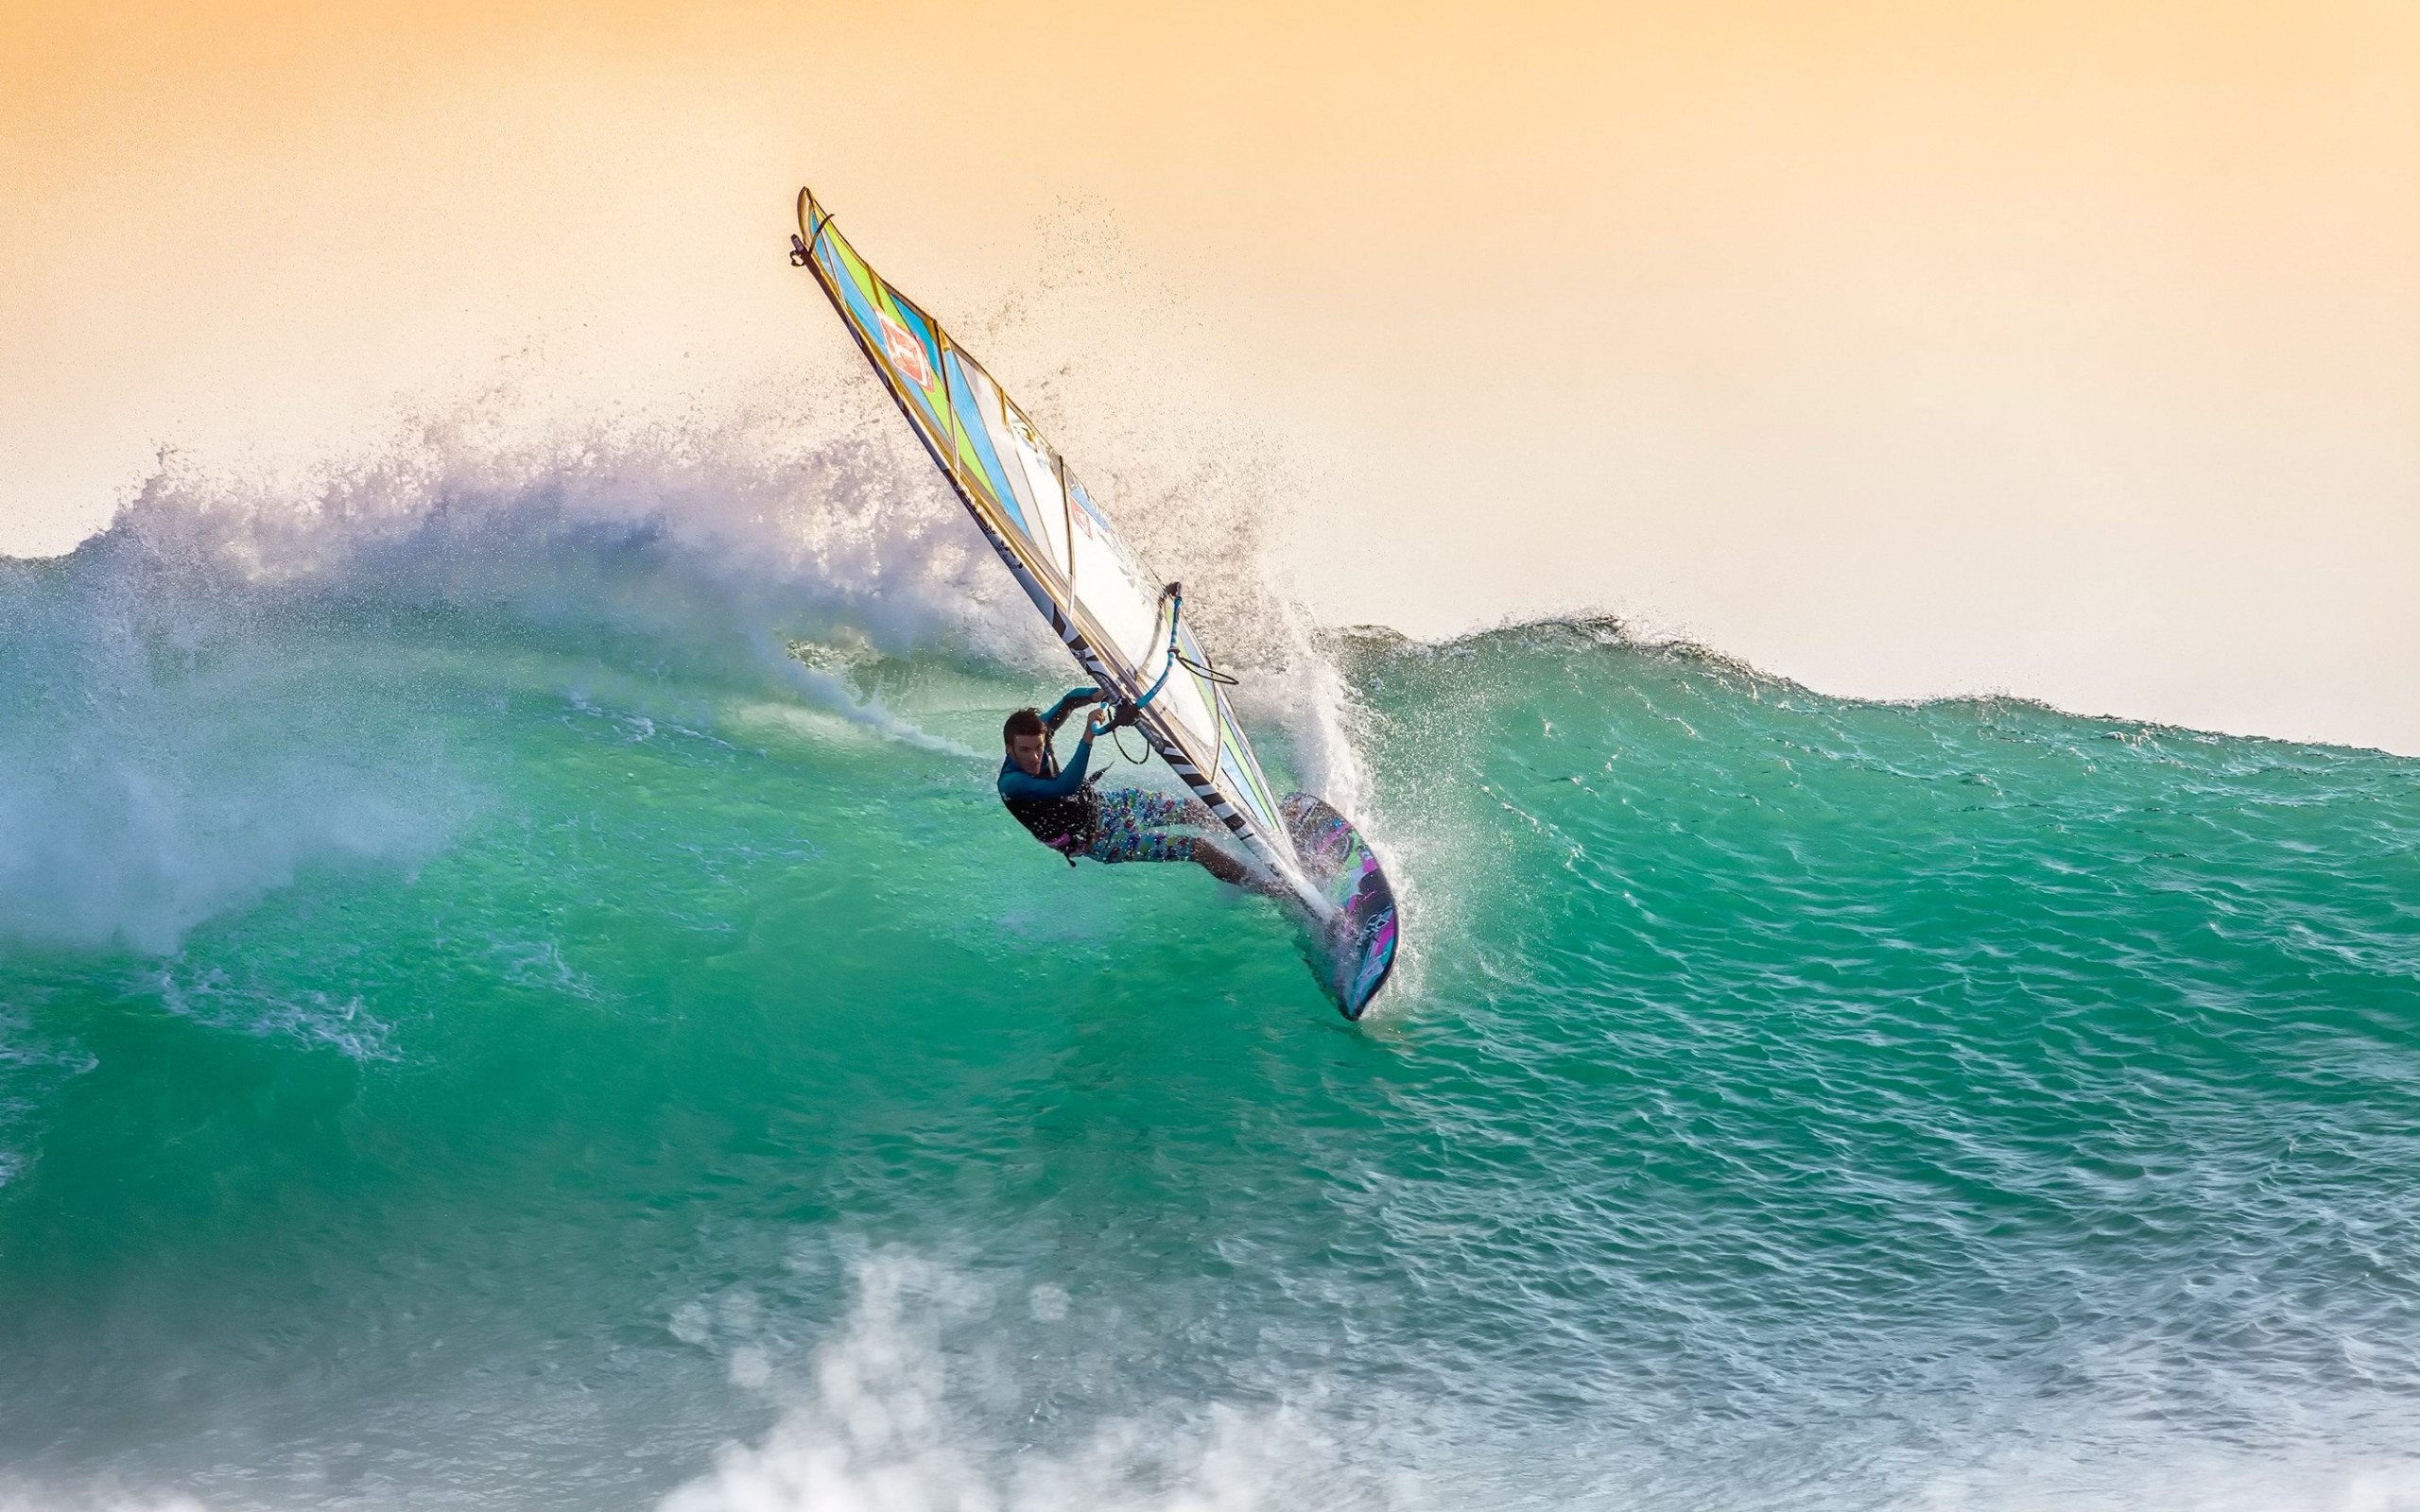 Wallpaper - Windsurf Costa Rica , HD Wallpaper & Backgrounds